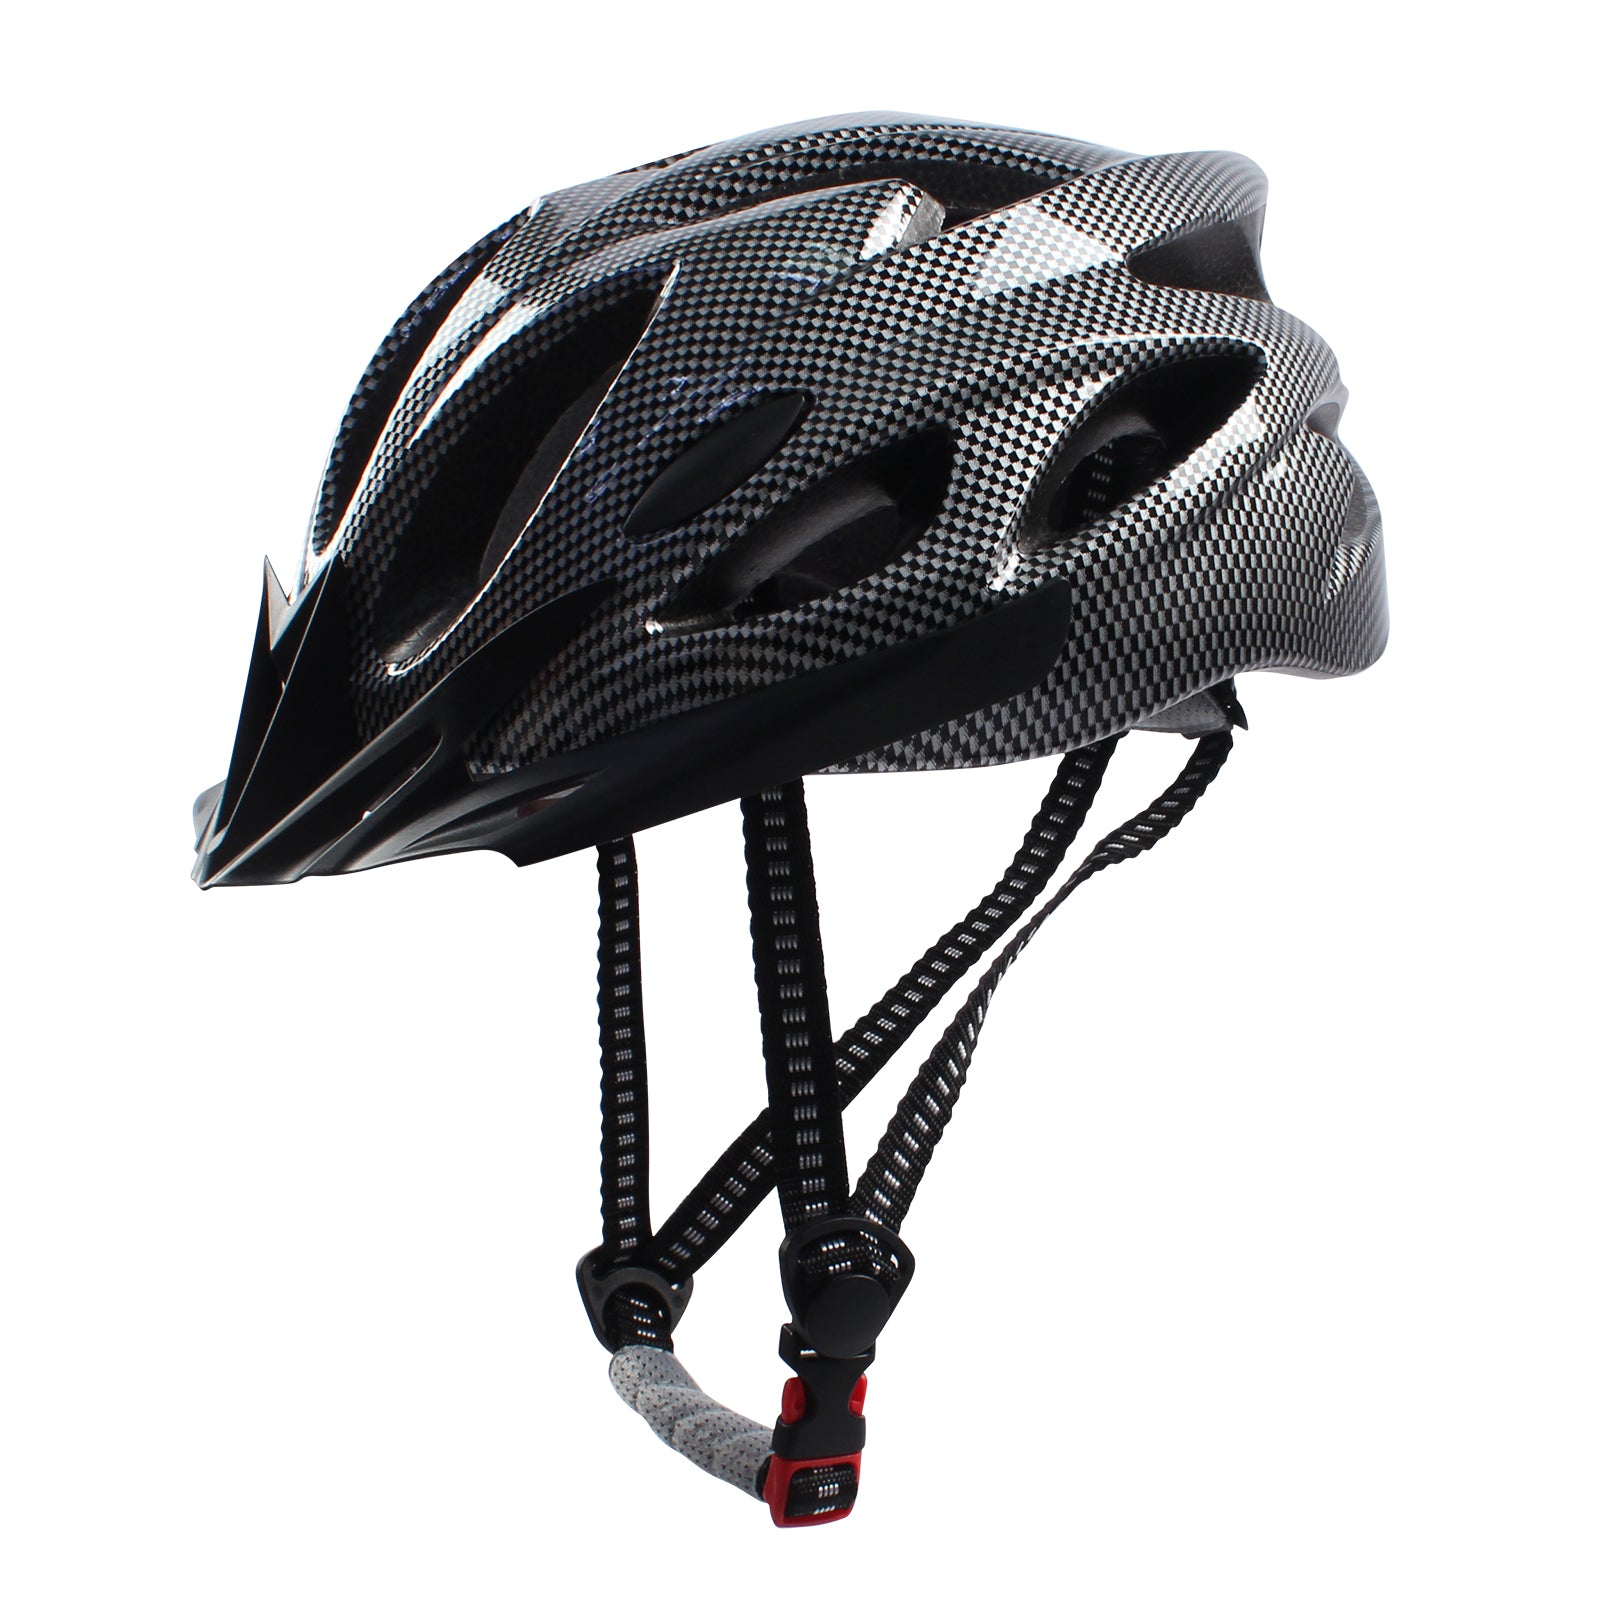 Adult Bike Helmet Lightweight Comfortable Adjustable for Men Women